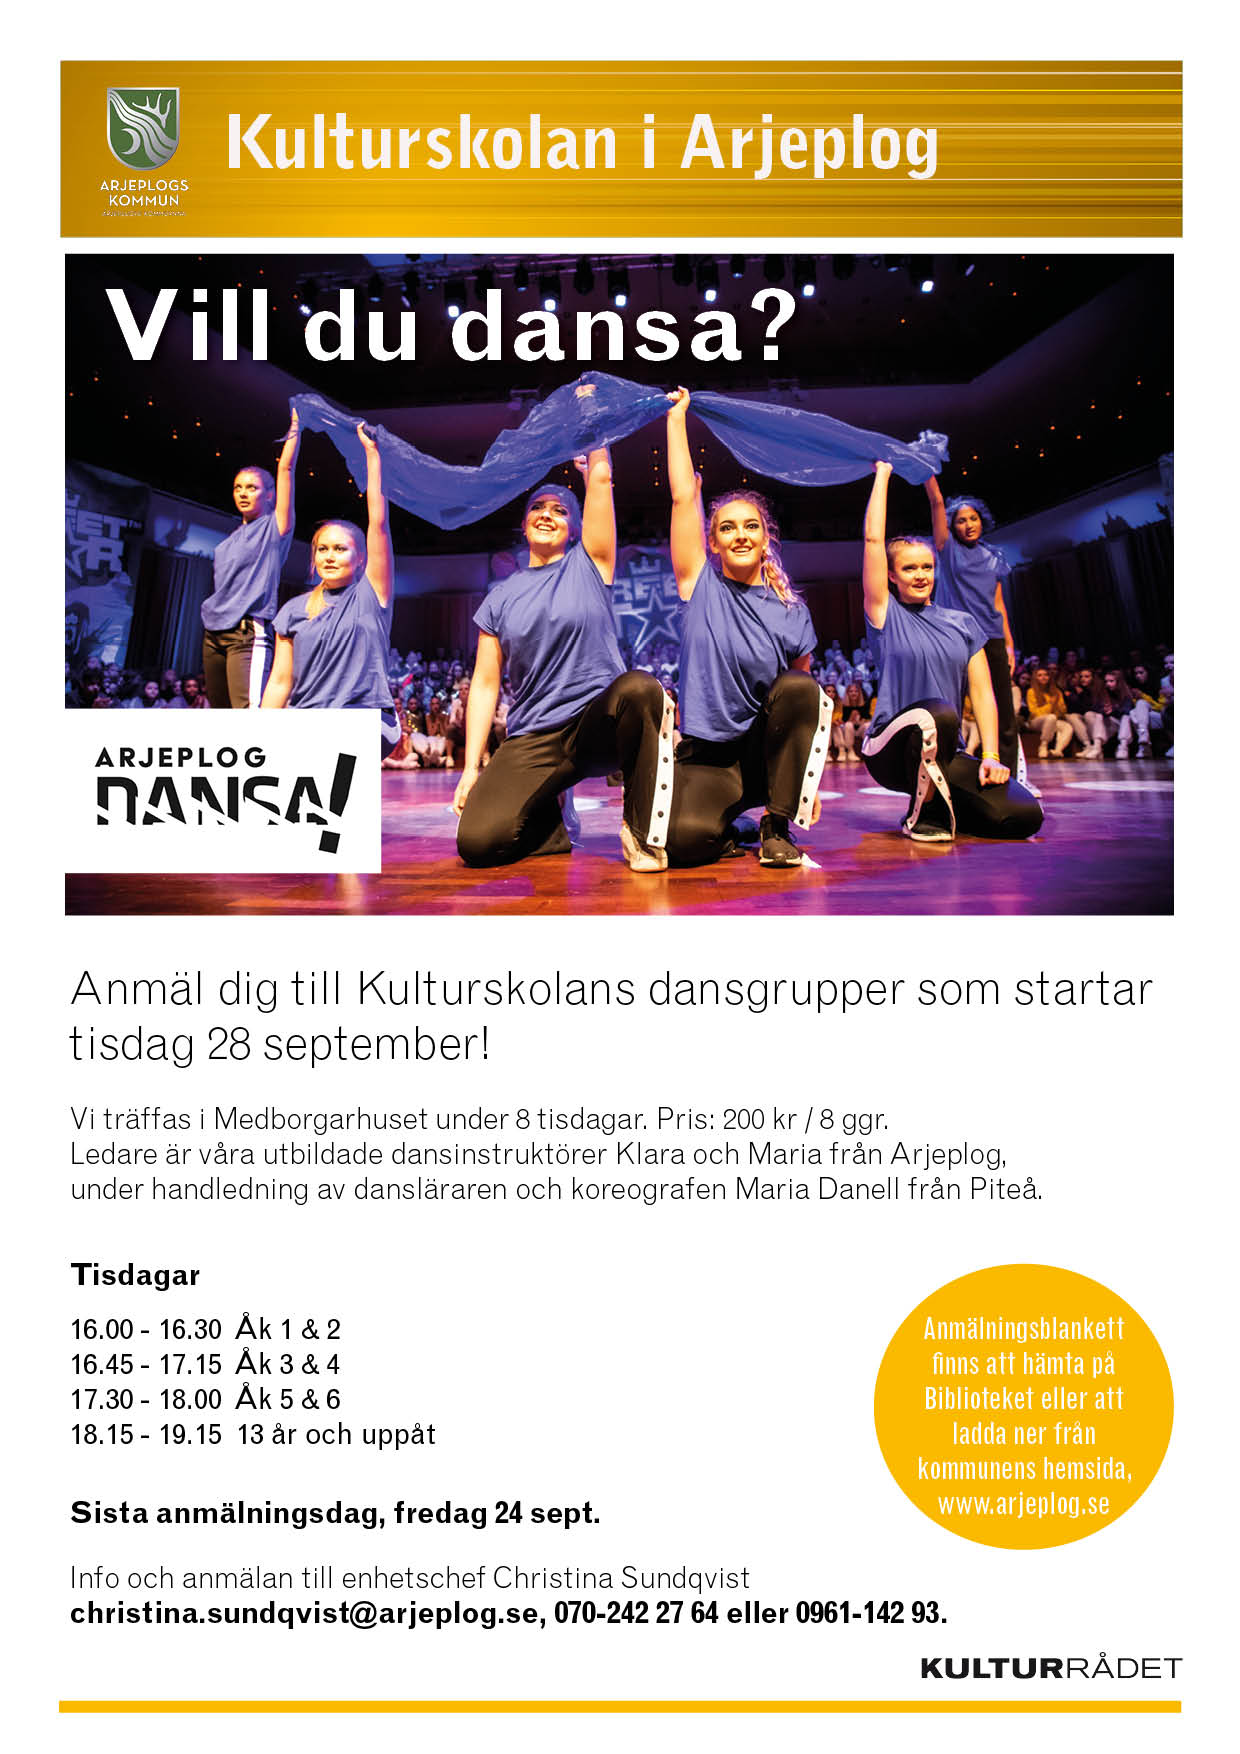 Kulturskolan Arjeplog dans